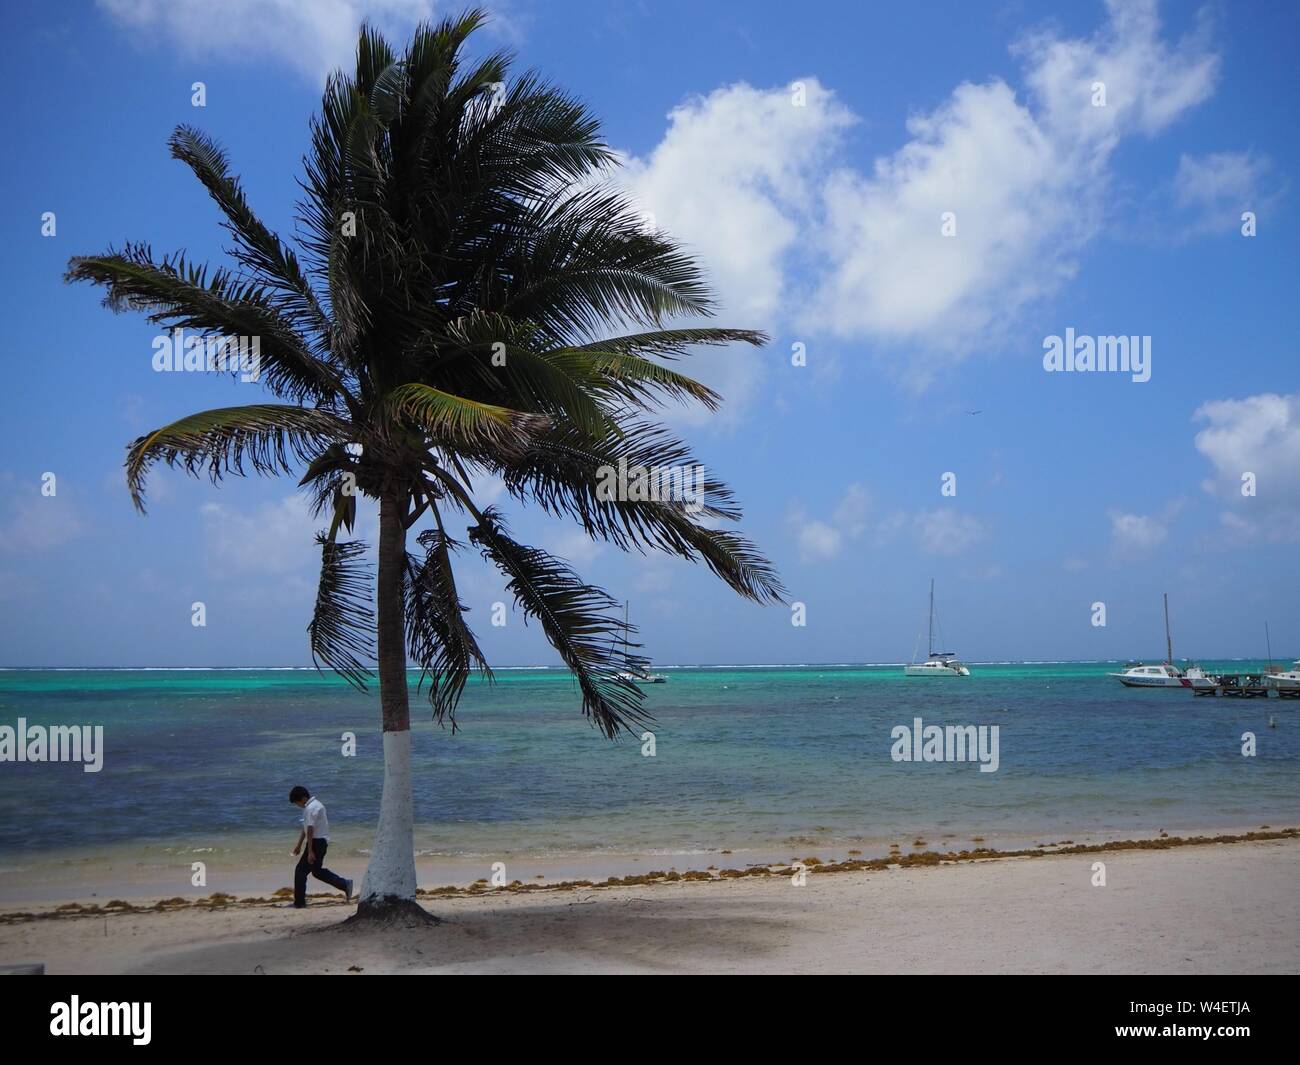 Der Strand auf Ambergris Caye, Beliaze, tropisches Paradies Insel in der Karibik. Stockfoto